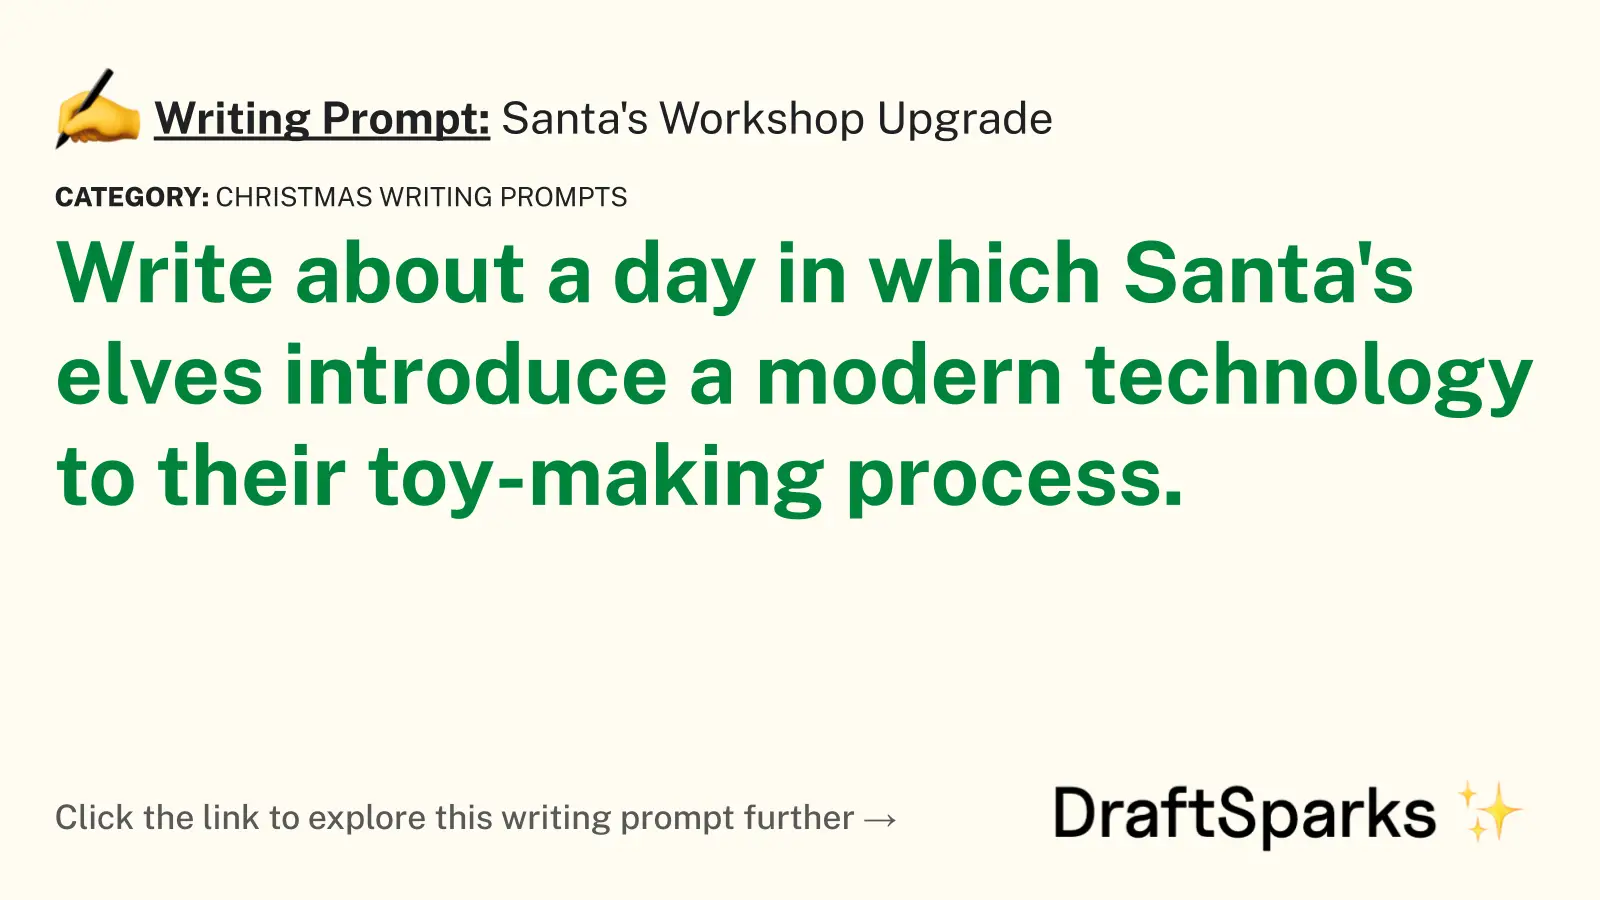 Santa’s Workshop Upgrade